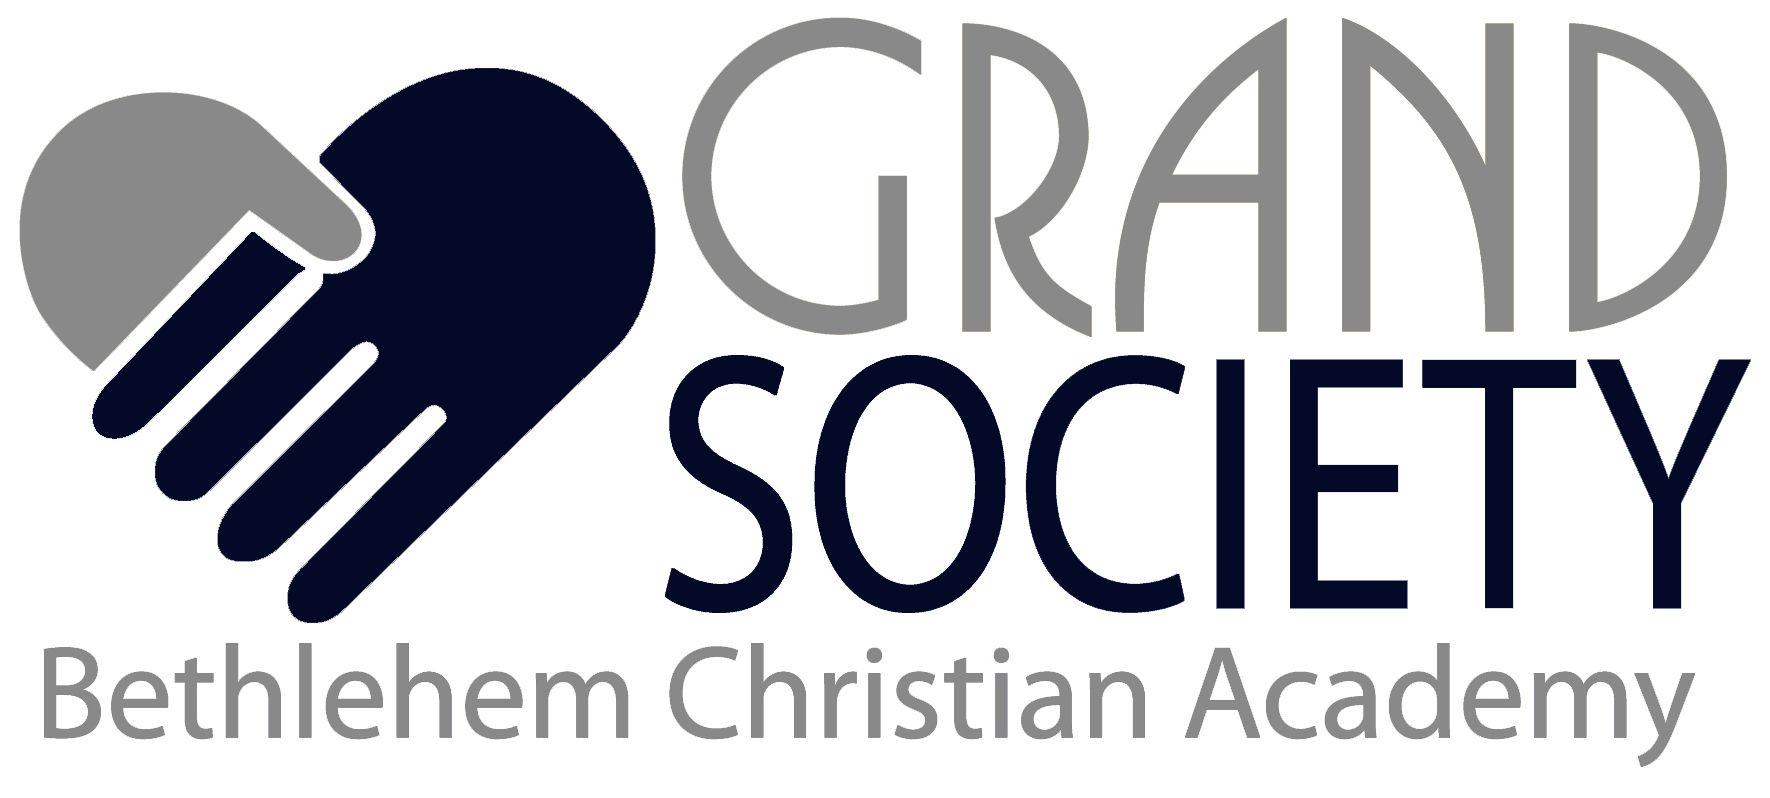 Bethlehem Christian Academy Logo - BCA Grand Society Christian Academy